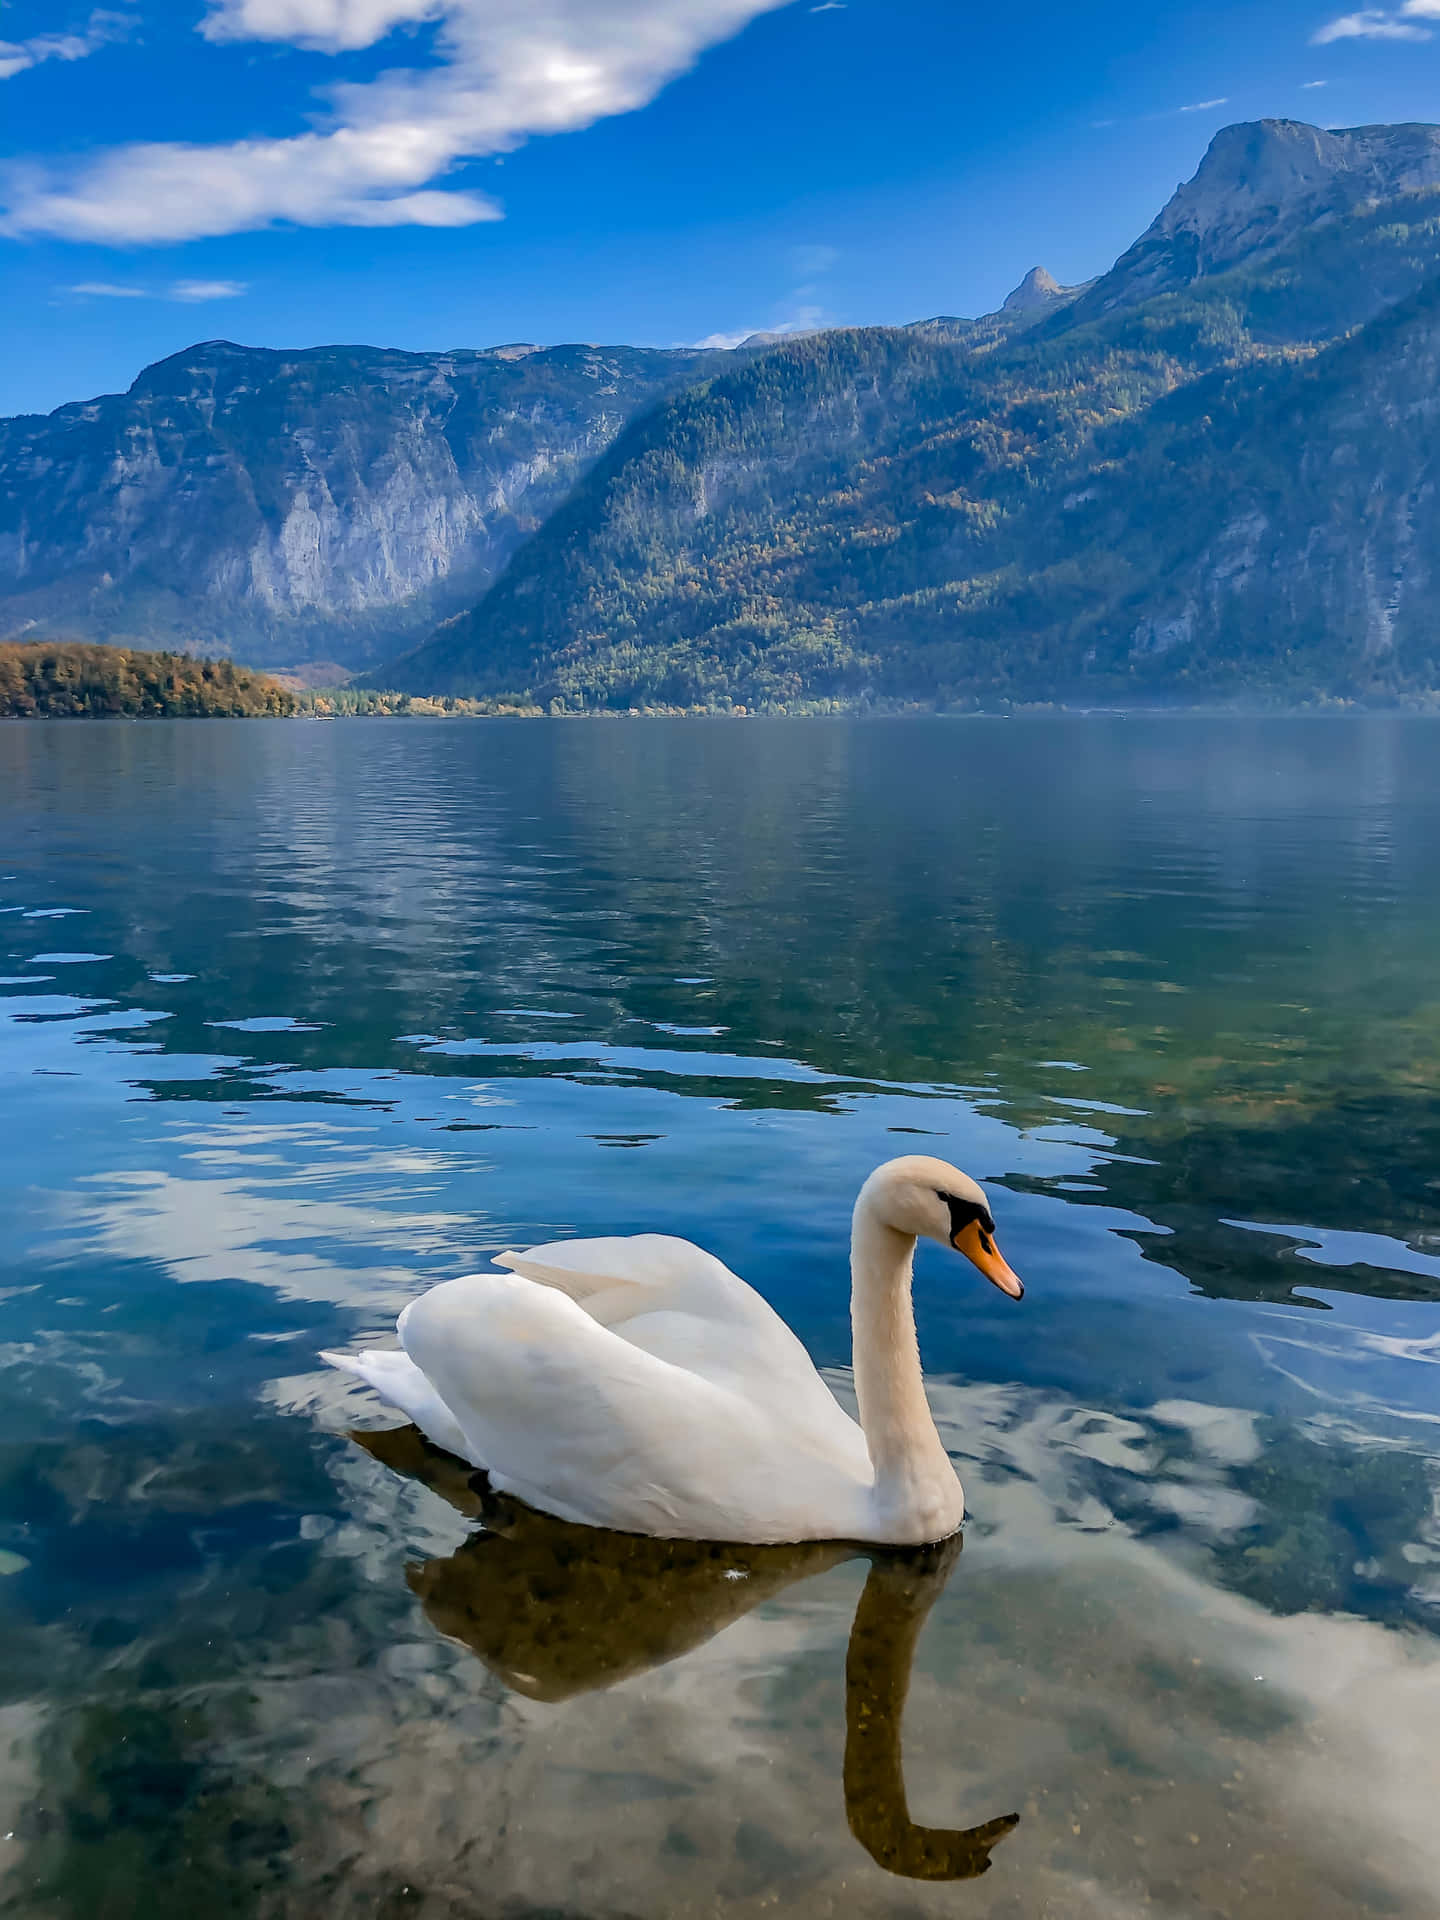 Imagende Un Cisne En Un Lago Cerca De Una Montaña.